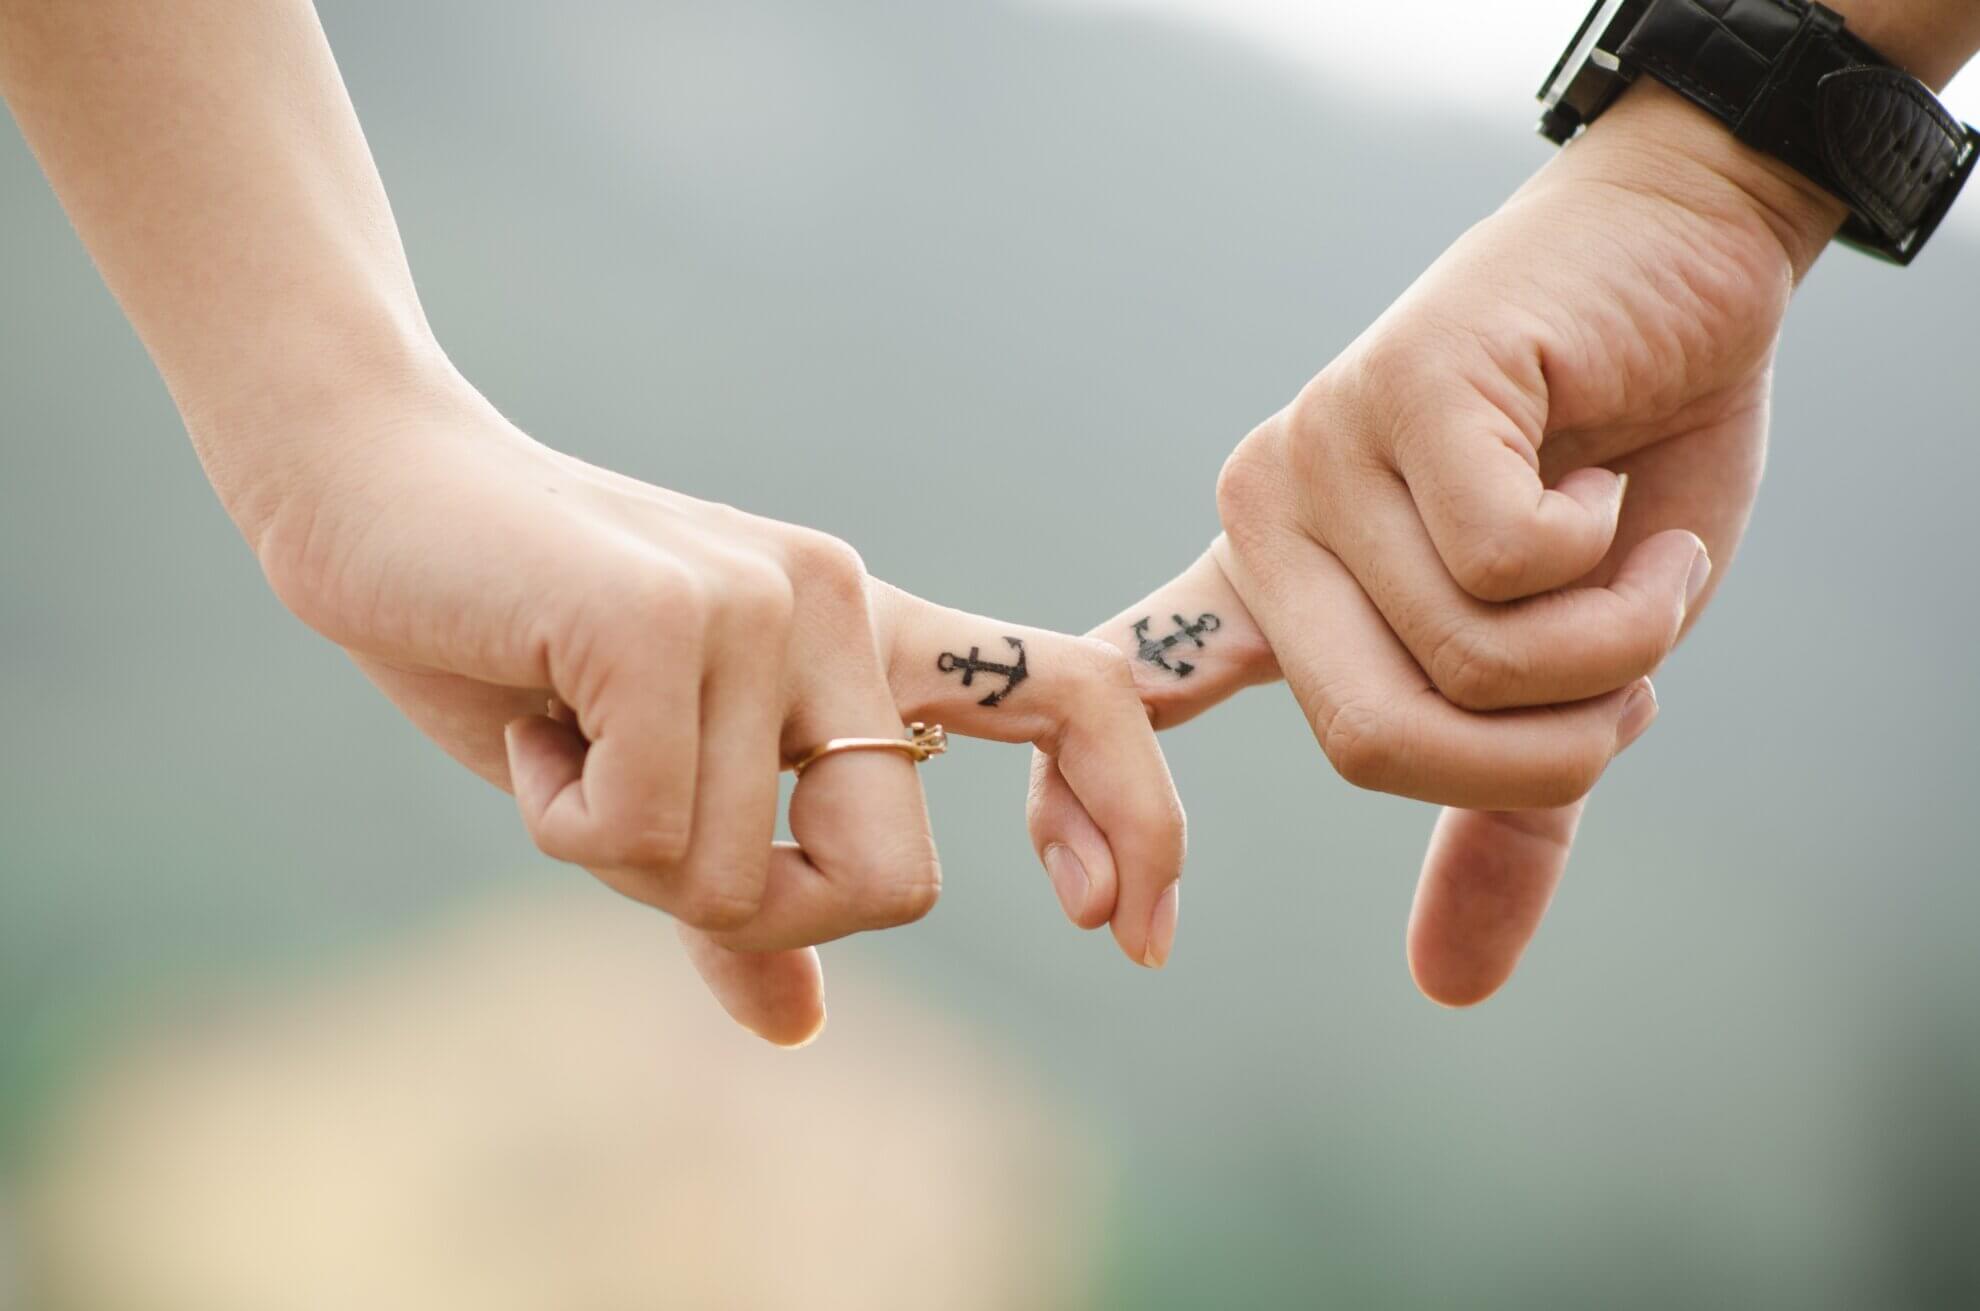 Zwei Hände halten sich gegenseitg mit den Zeigefingern, die mit Ankern tätowiert sind. Dies Bild dient als Symbol für eine freie Trauung.